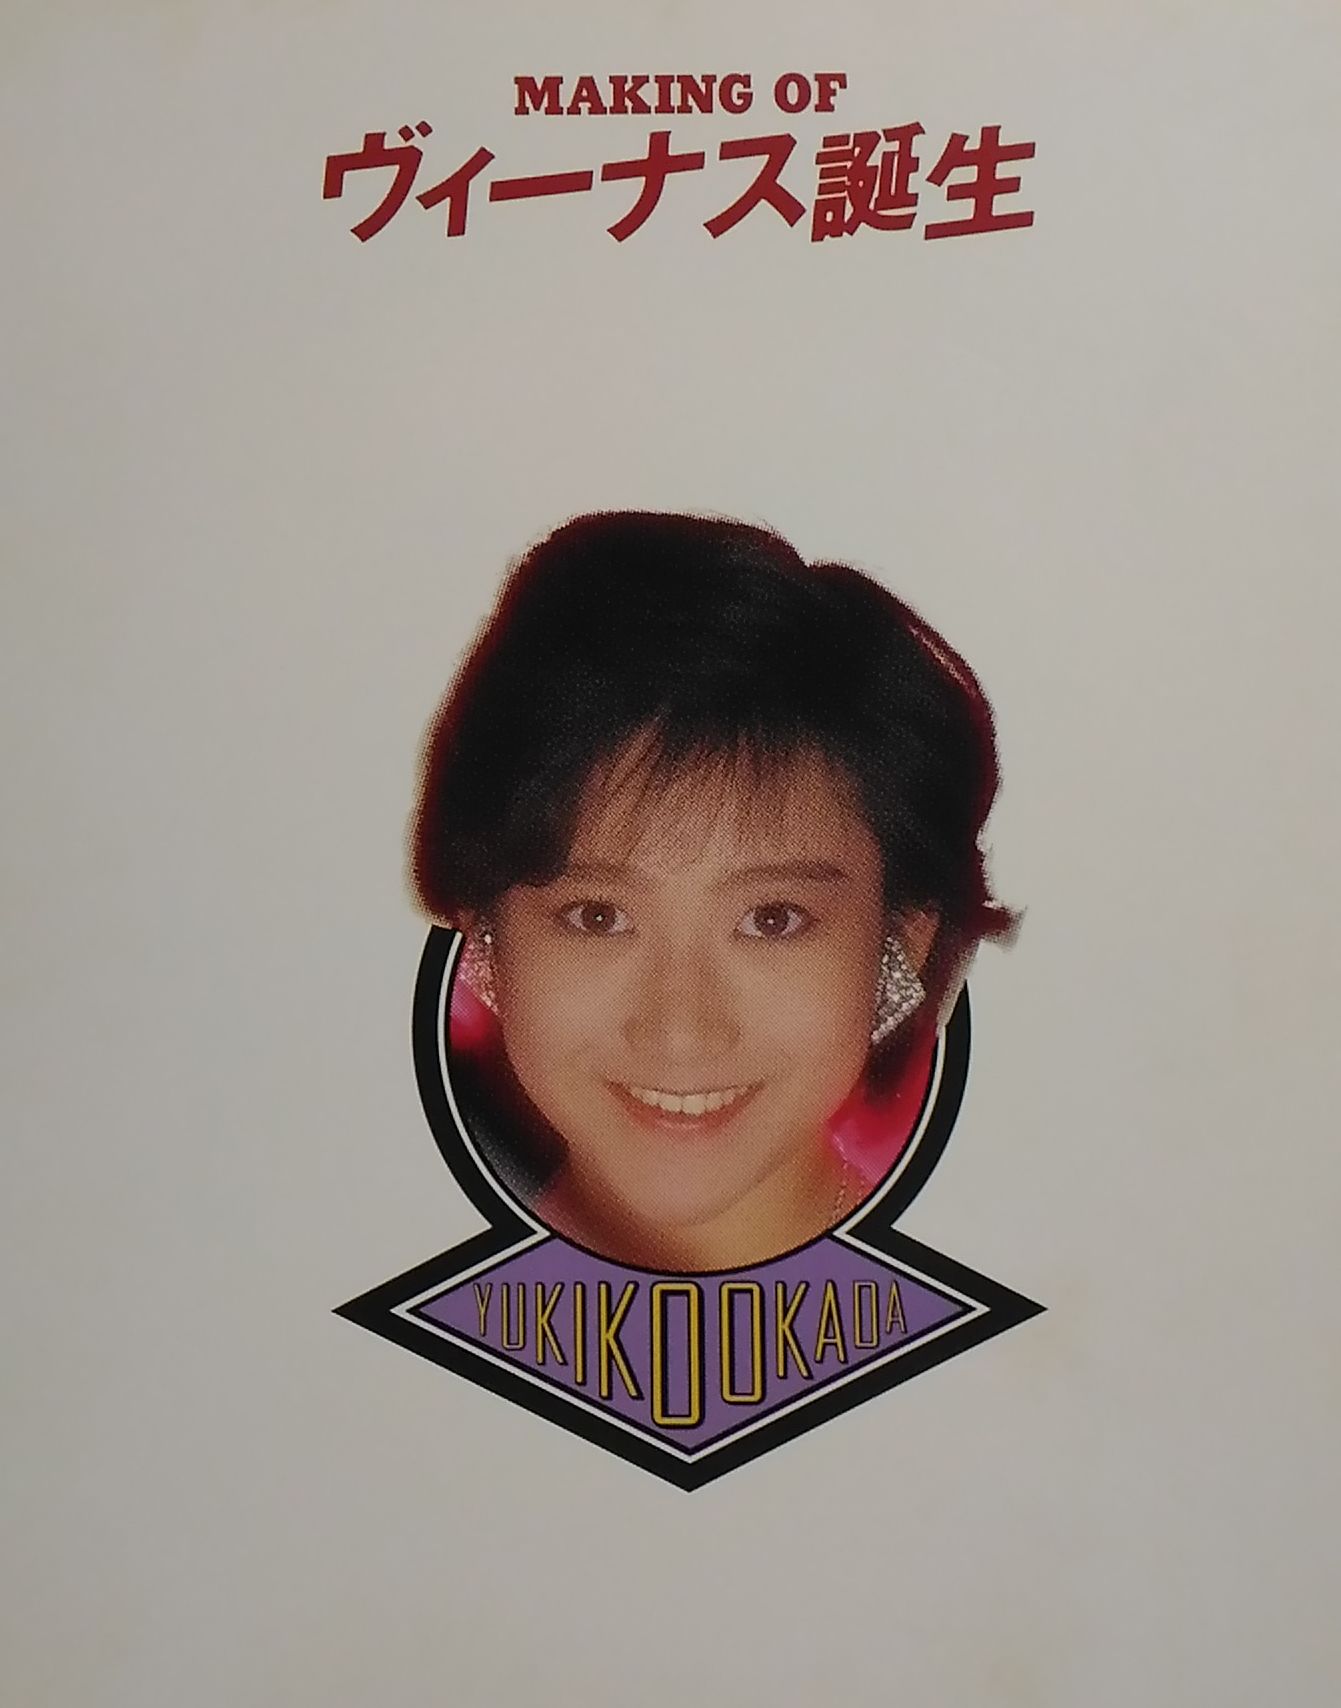 1986年/岡田有希子はなぜ死んだか/あの自殺は失恋なんかが原因じゃない 